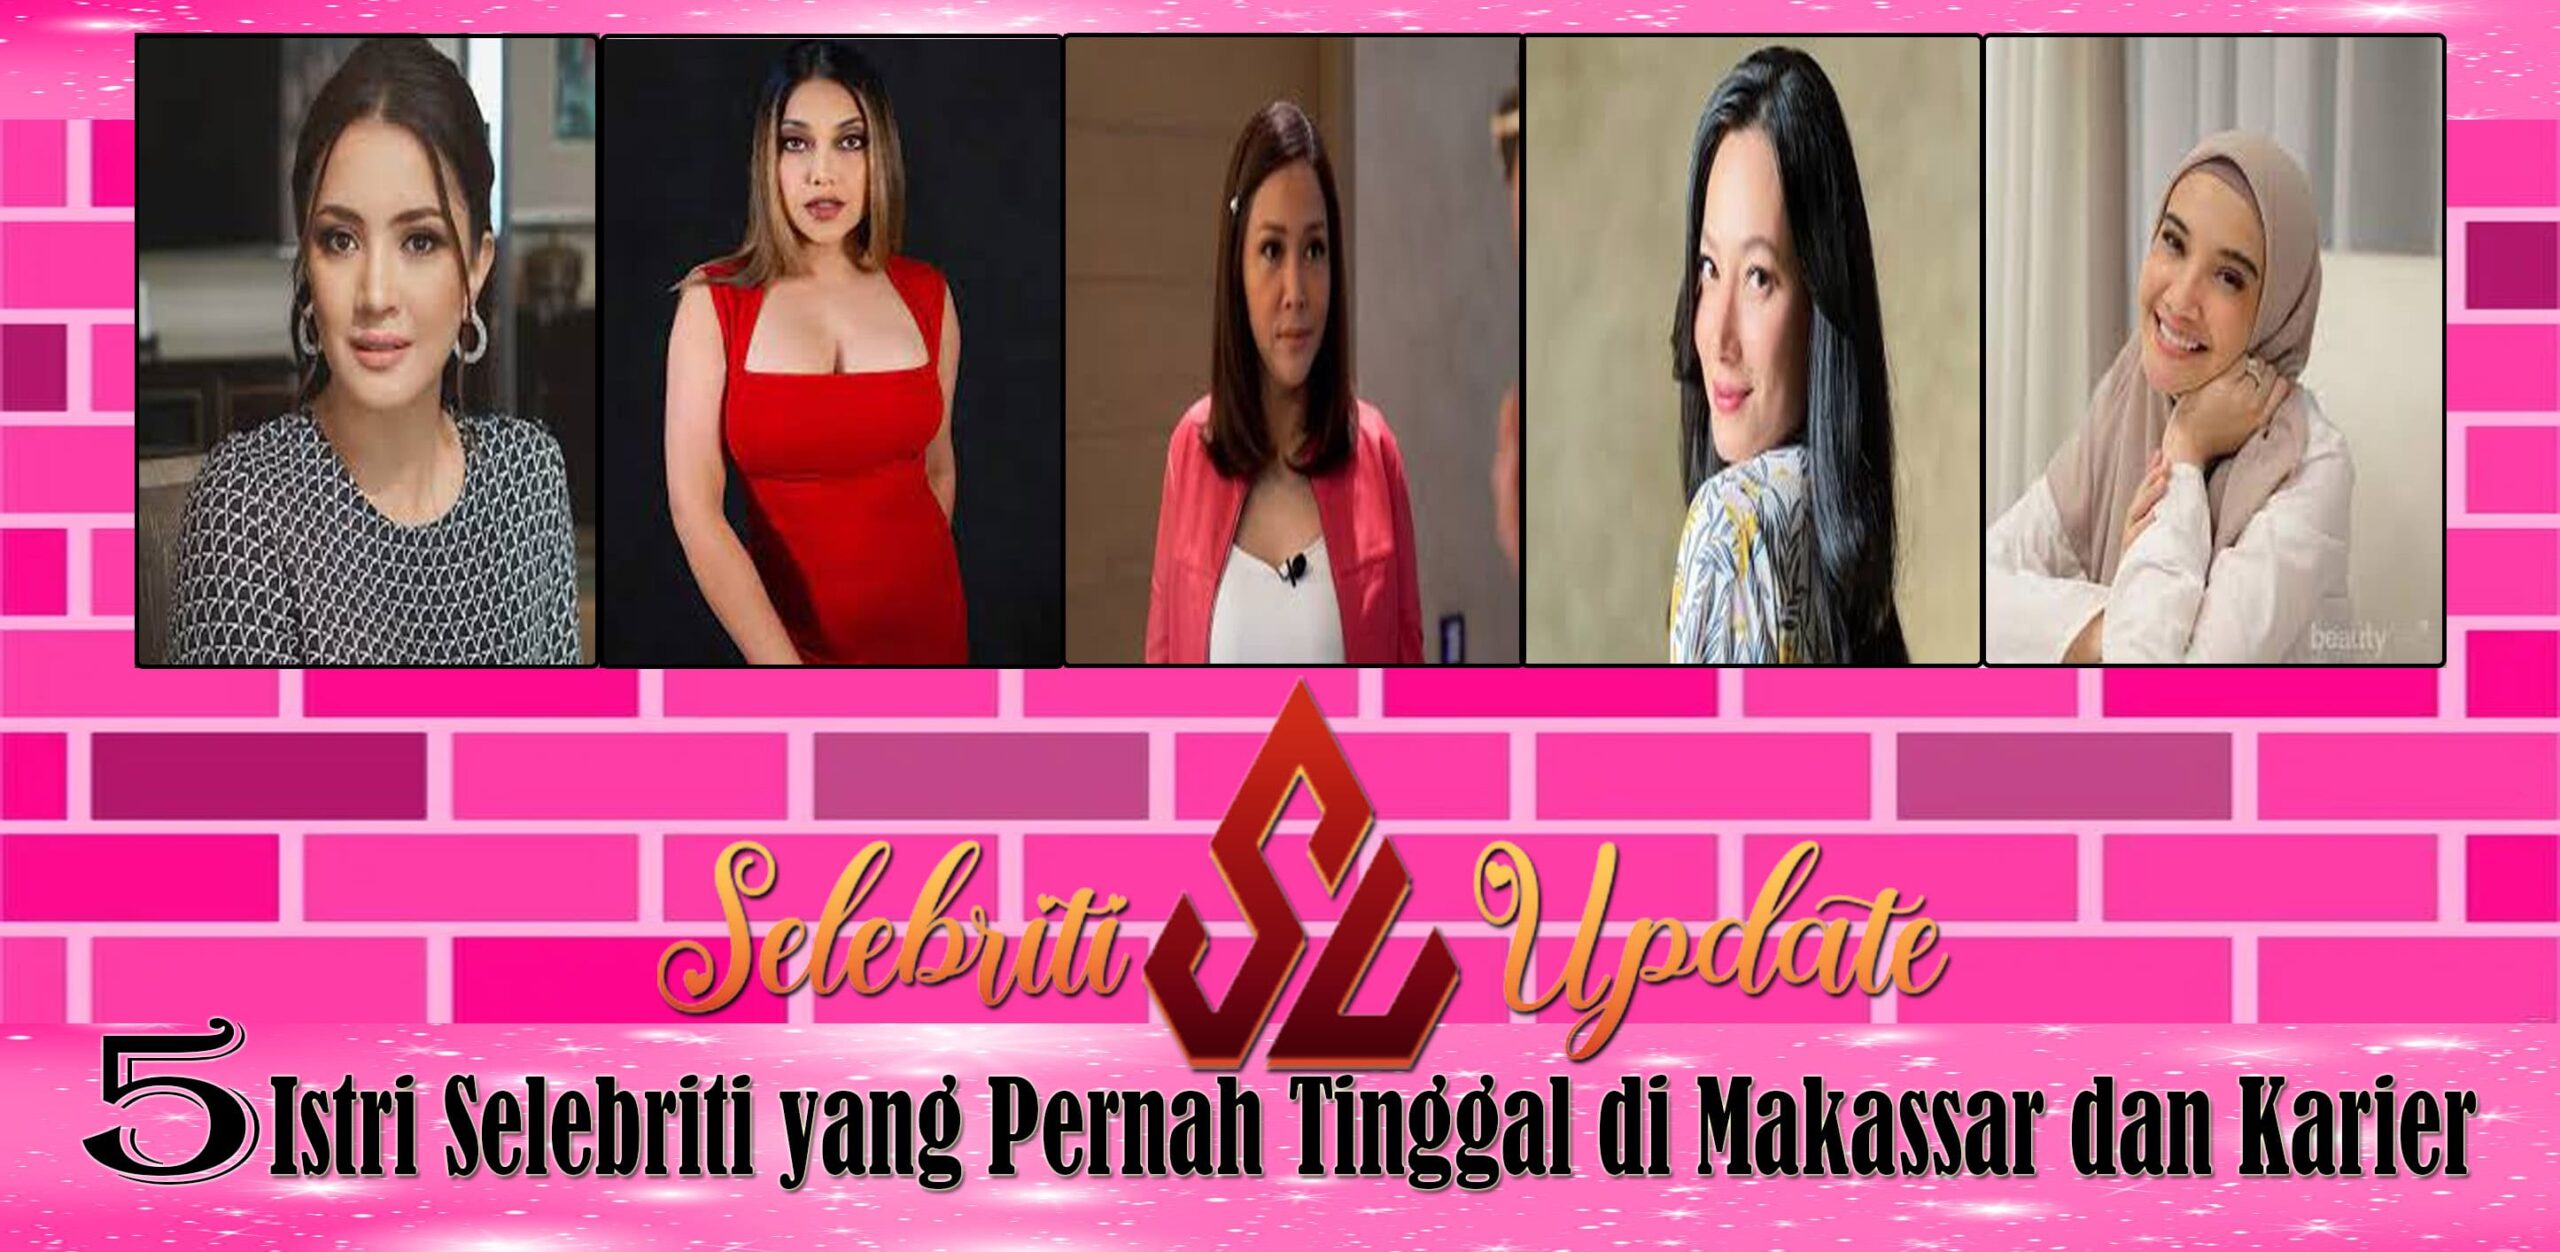 5 Istri Selebriti yang Pernah Tinggal di Makassar dan Karier